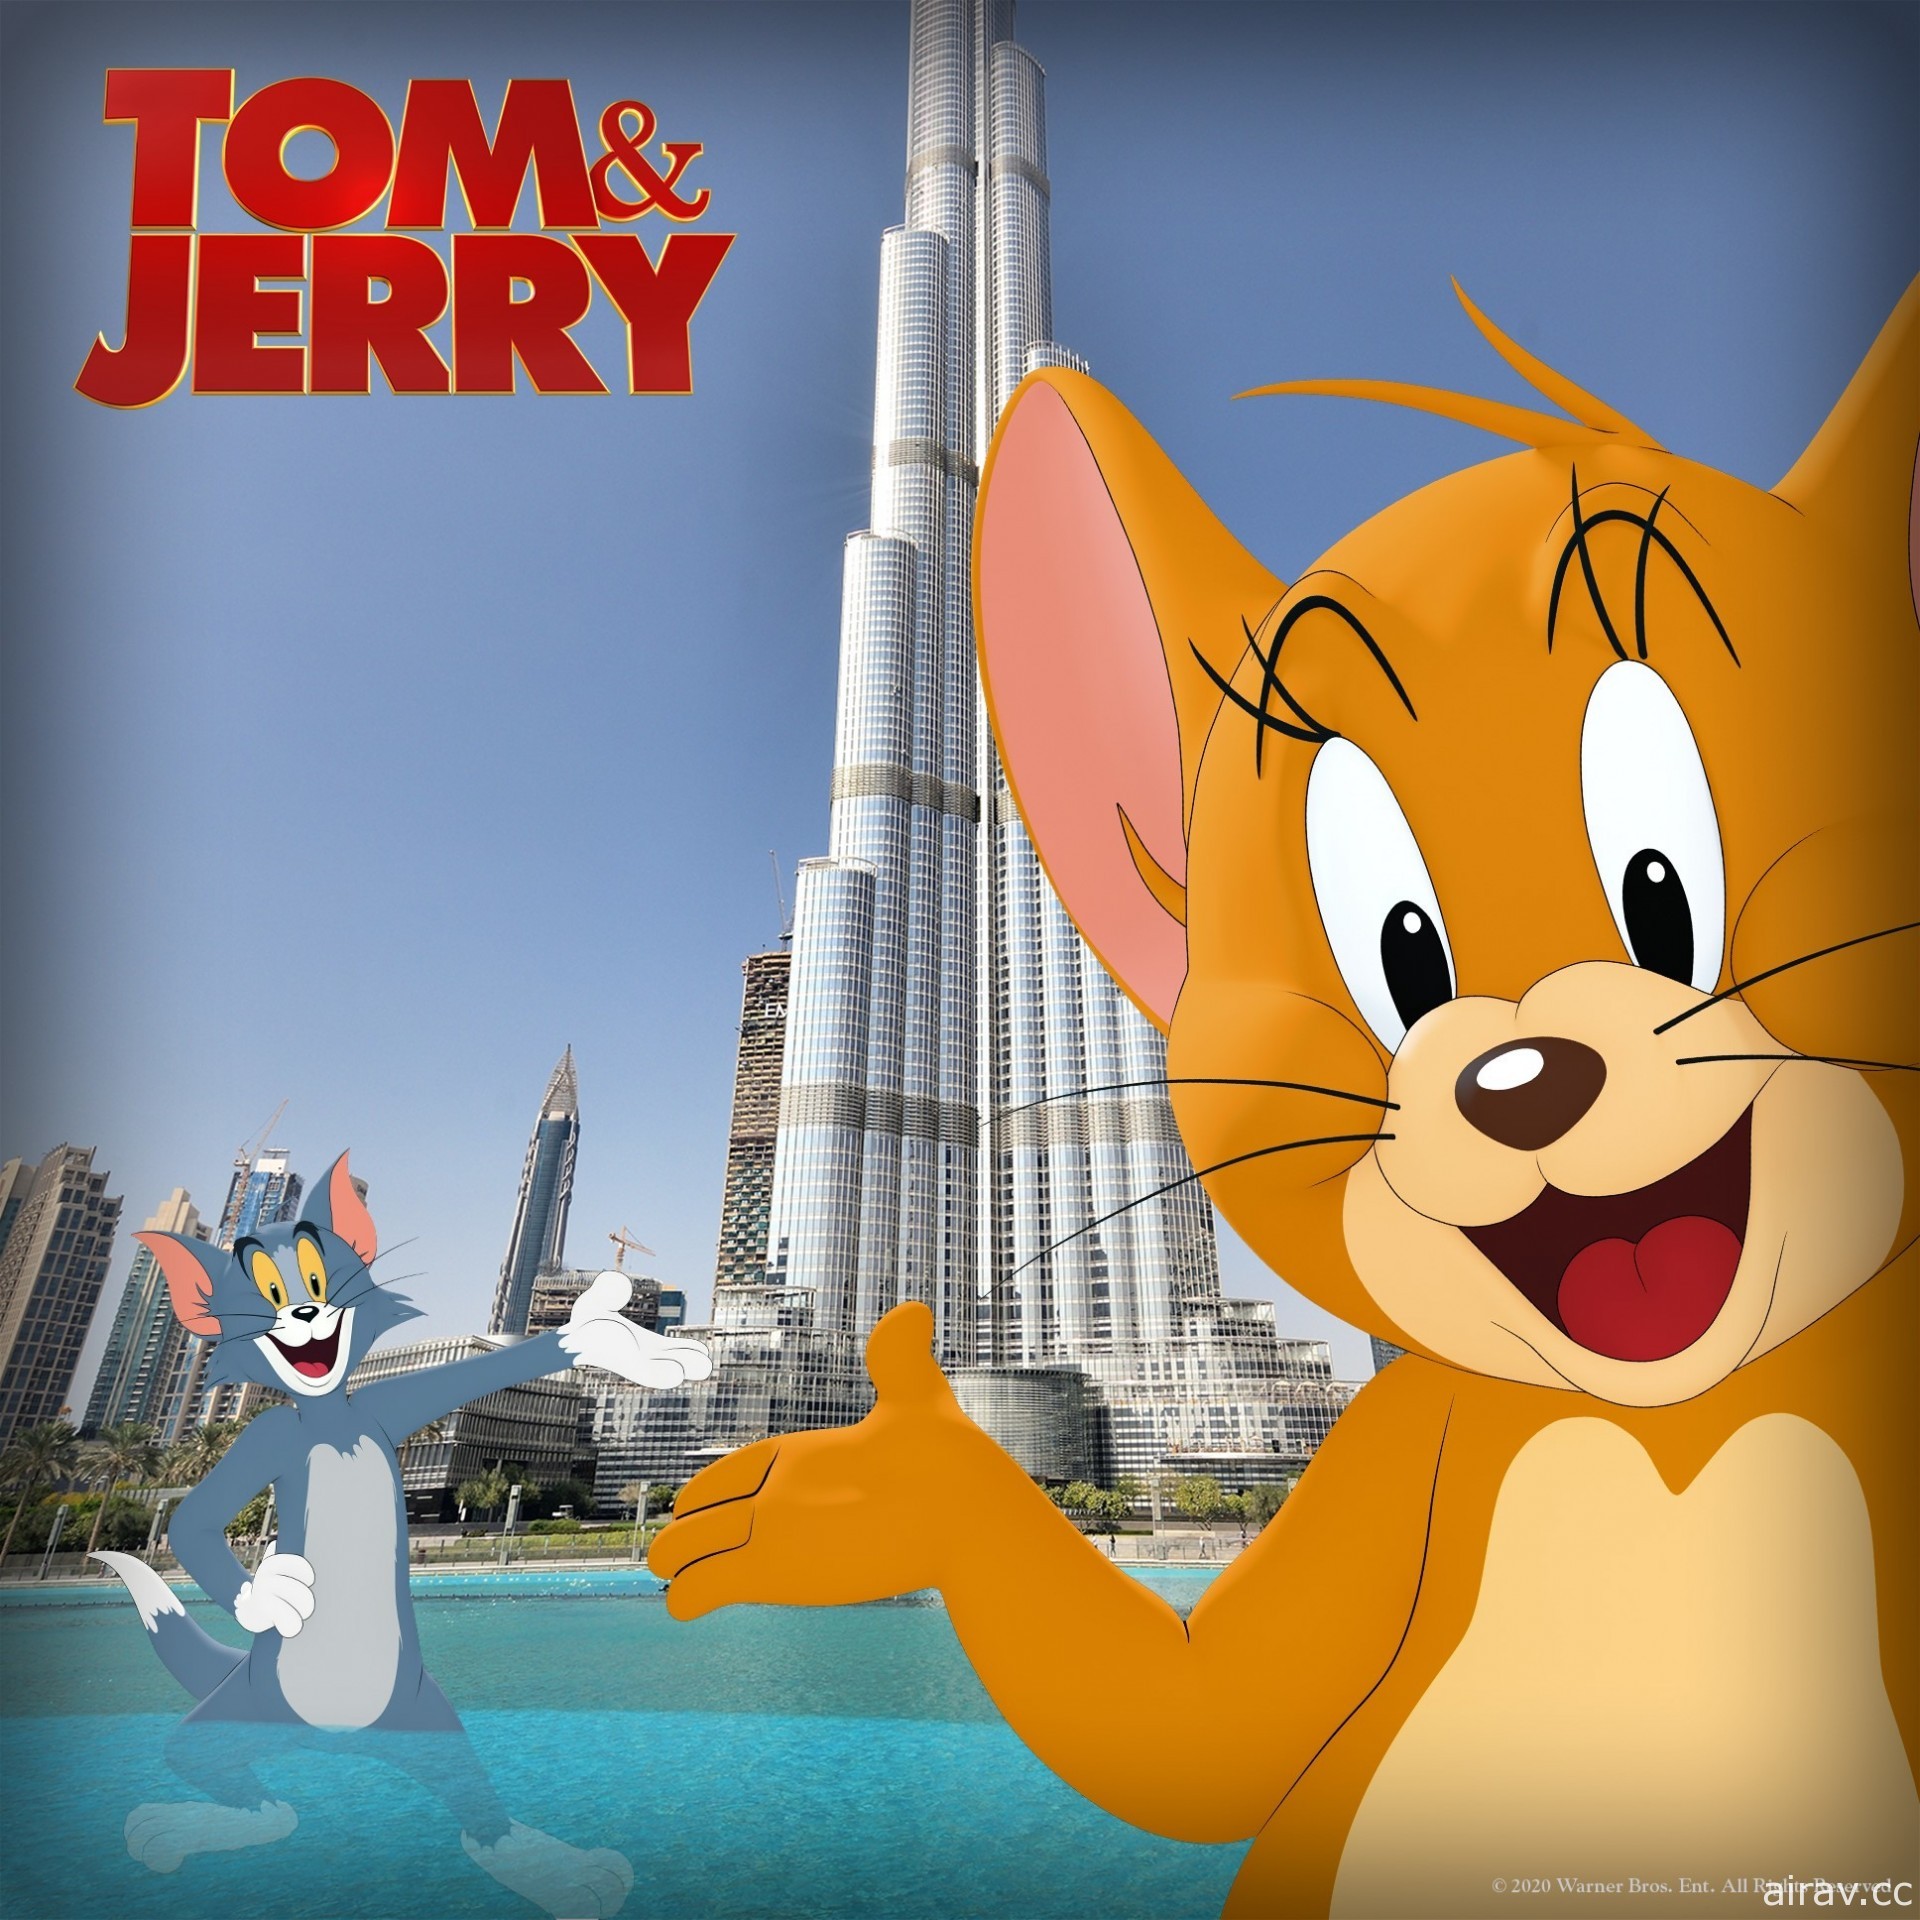 克萝伊摩蕾兹参演《汤姆猫与杰利鼠》电影预告宣传影片释出 2021 年上映